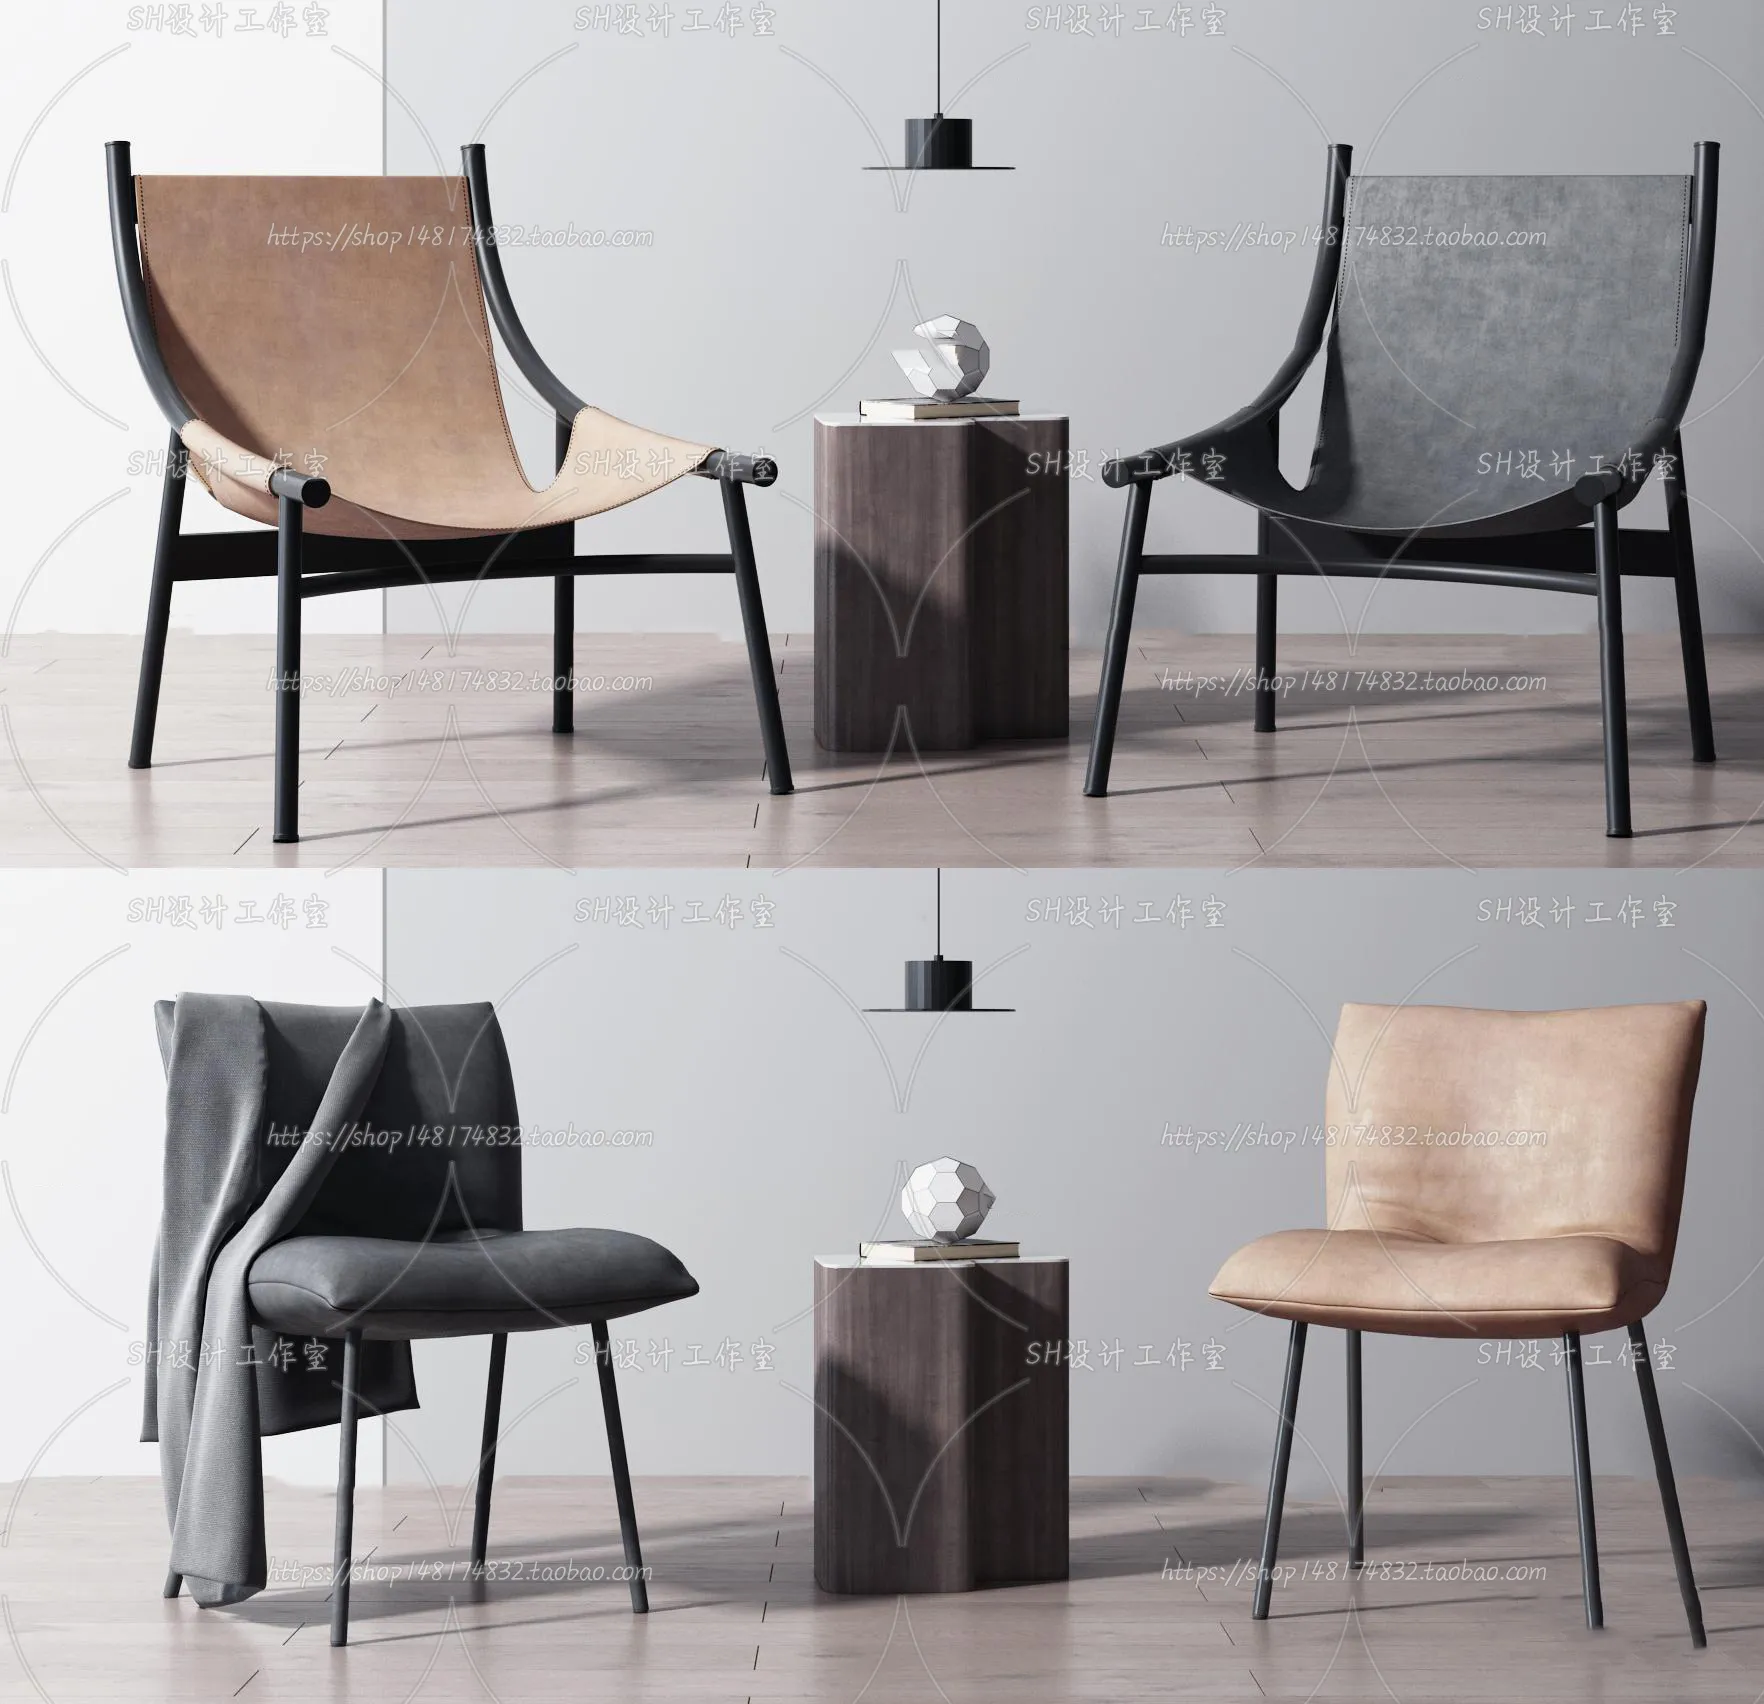 Chair – Single Chair 3D Models – 2045